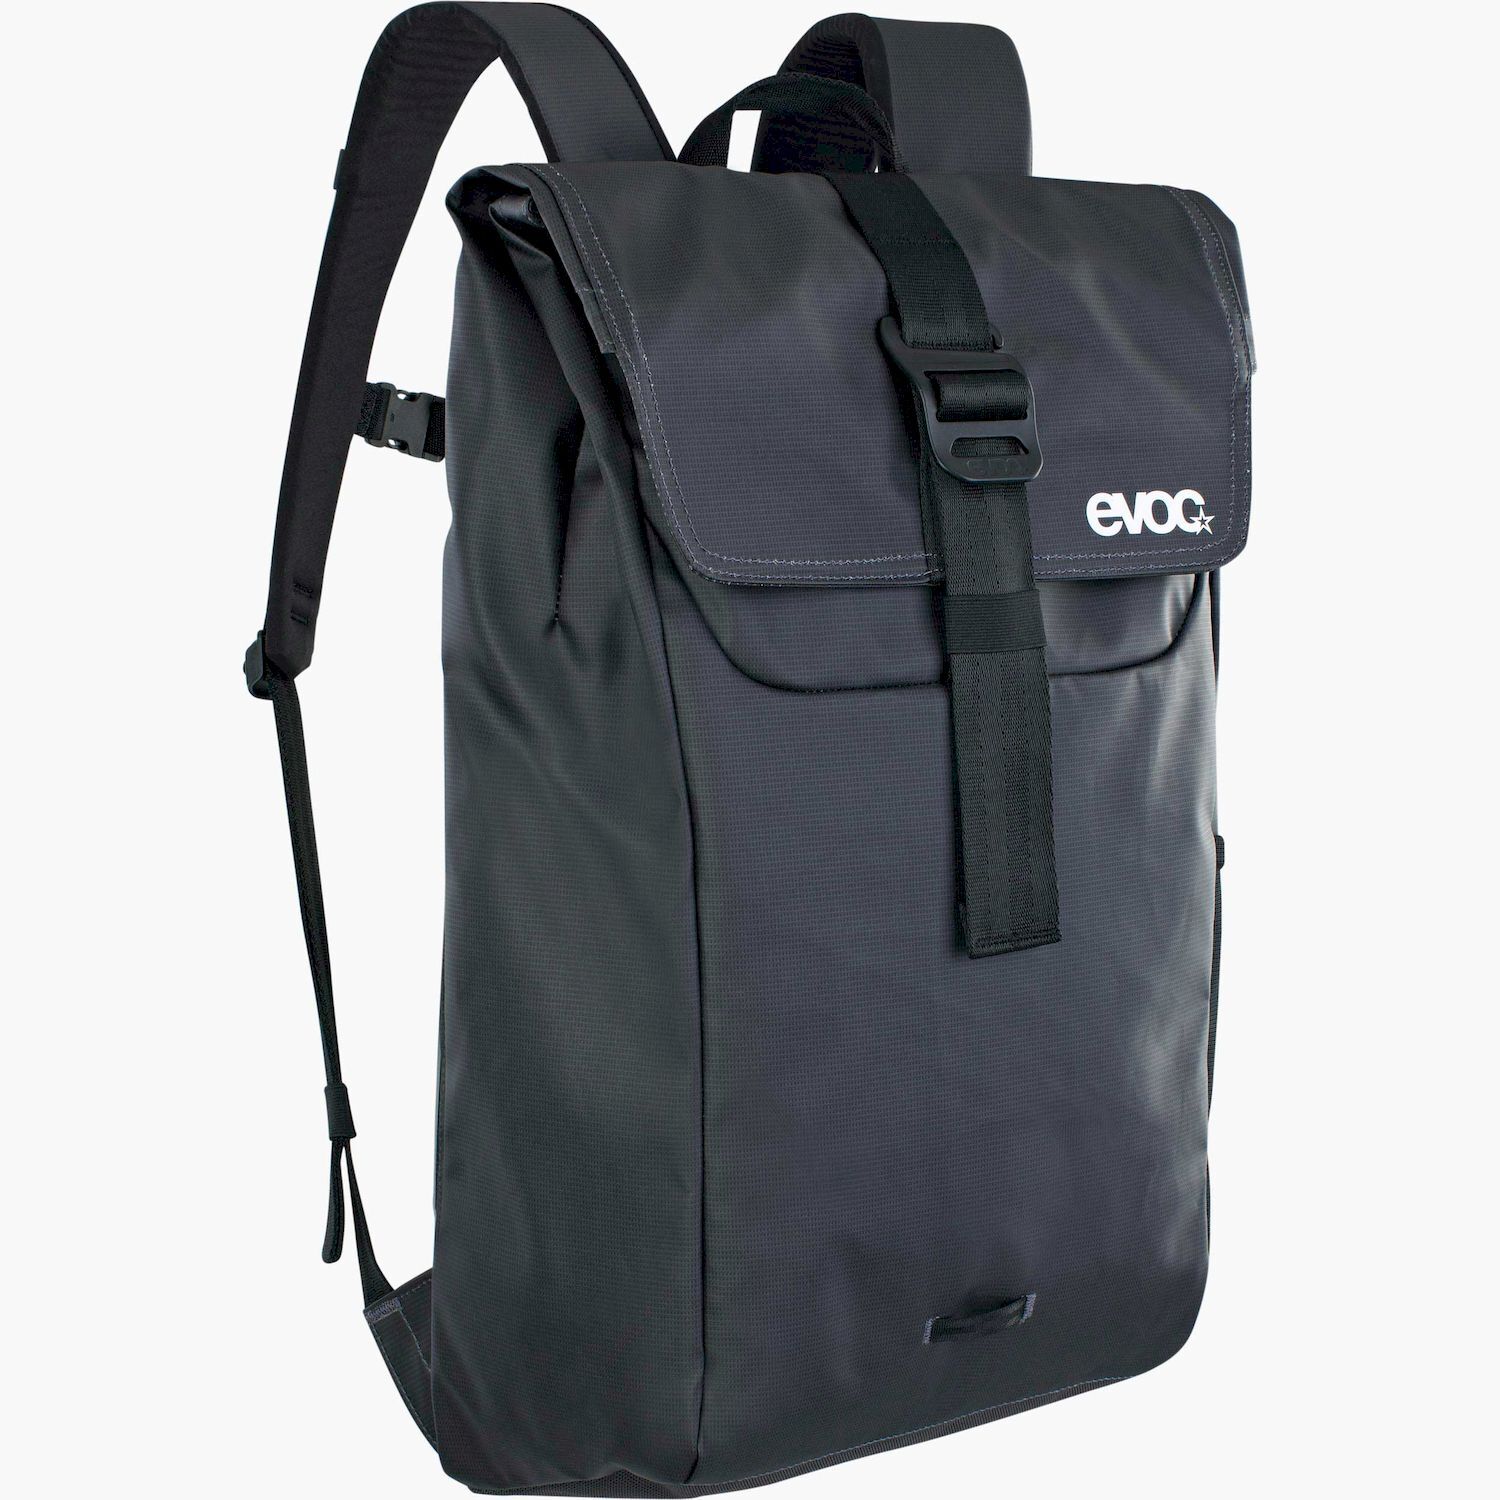 Evoc Duffle Backpack 16 - Backpack